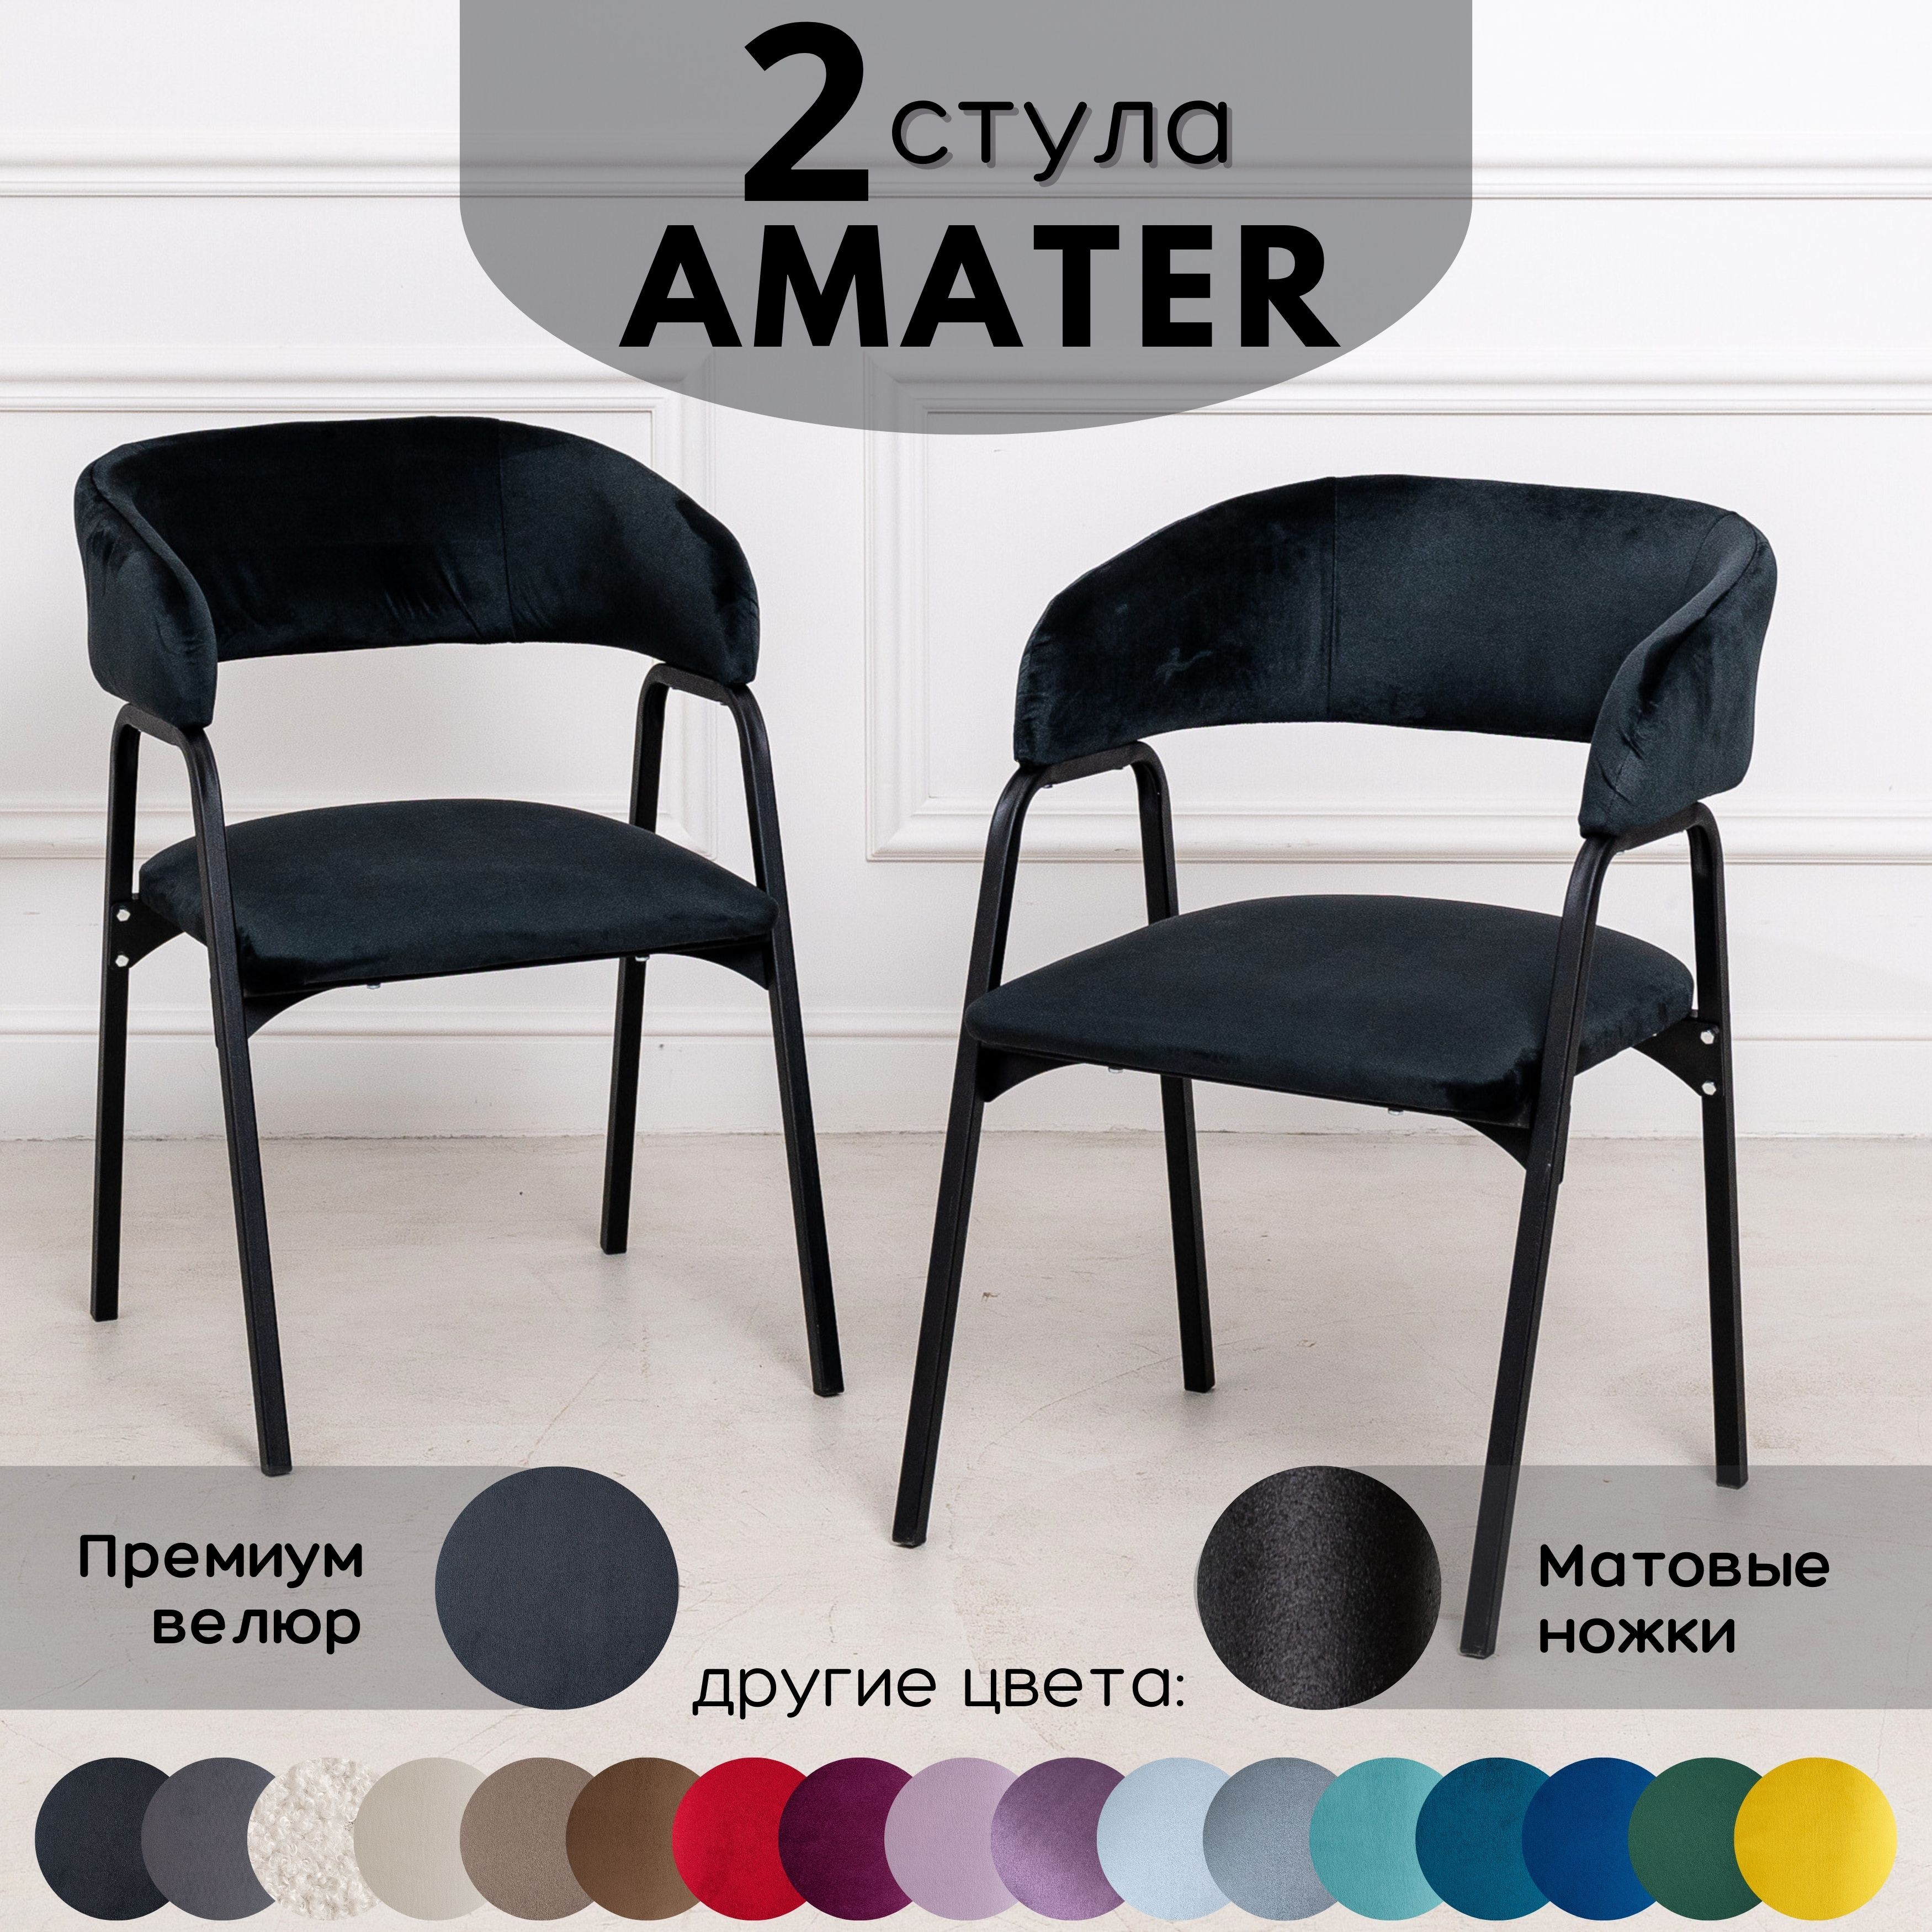 Стулья для кухни Stuler Chairs Amater 2 шт, черный